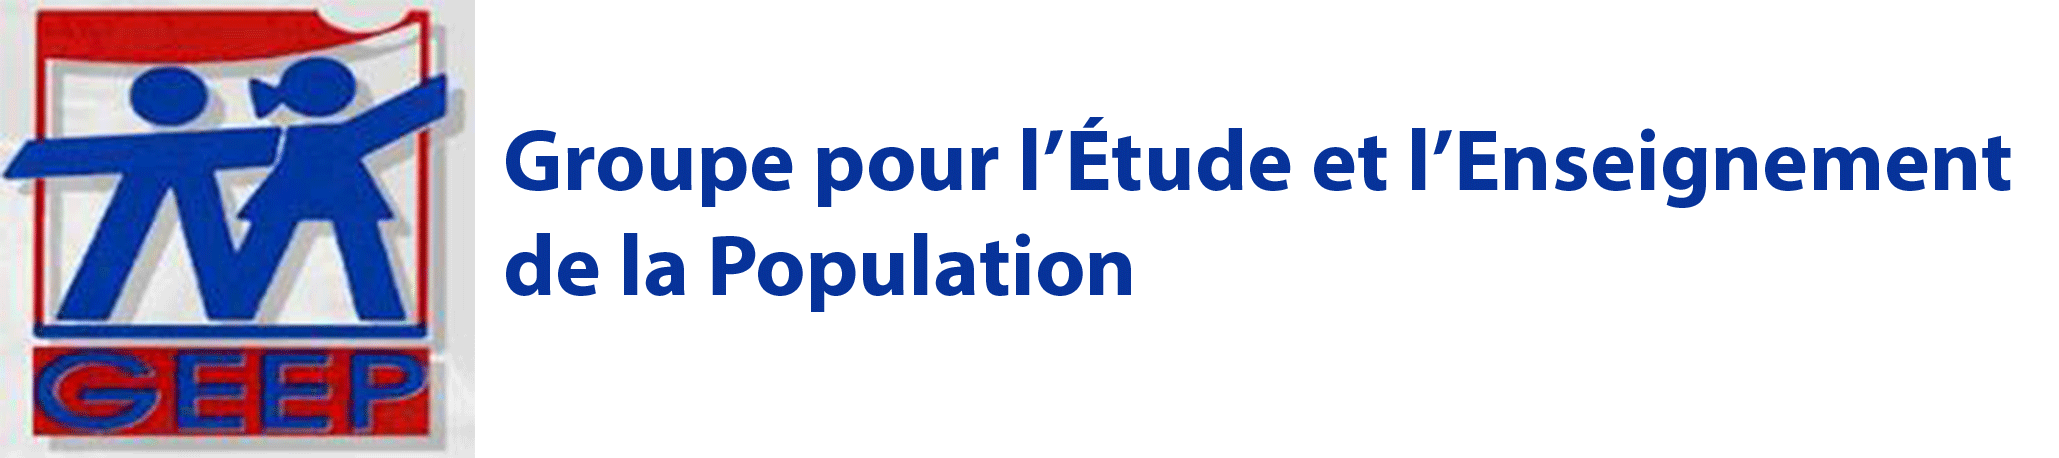 Groupe pour l’Étude et l’Enseignement de la Population (GEEP)